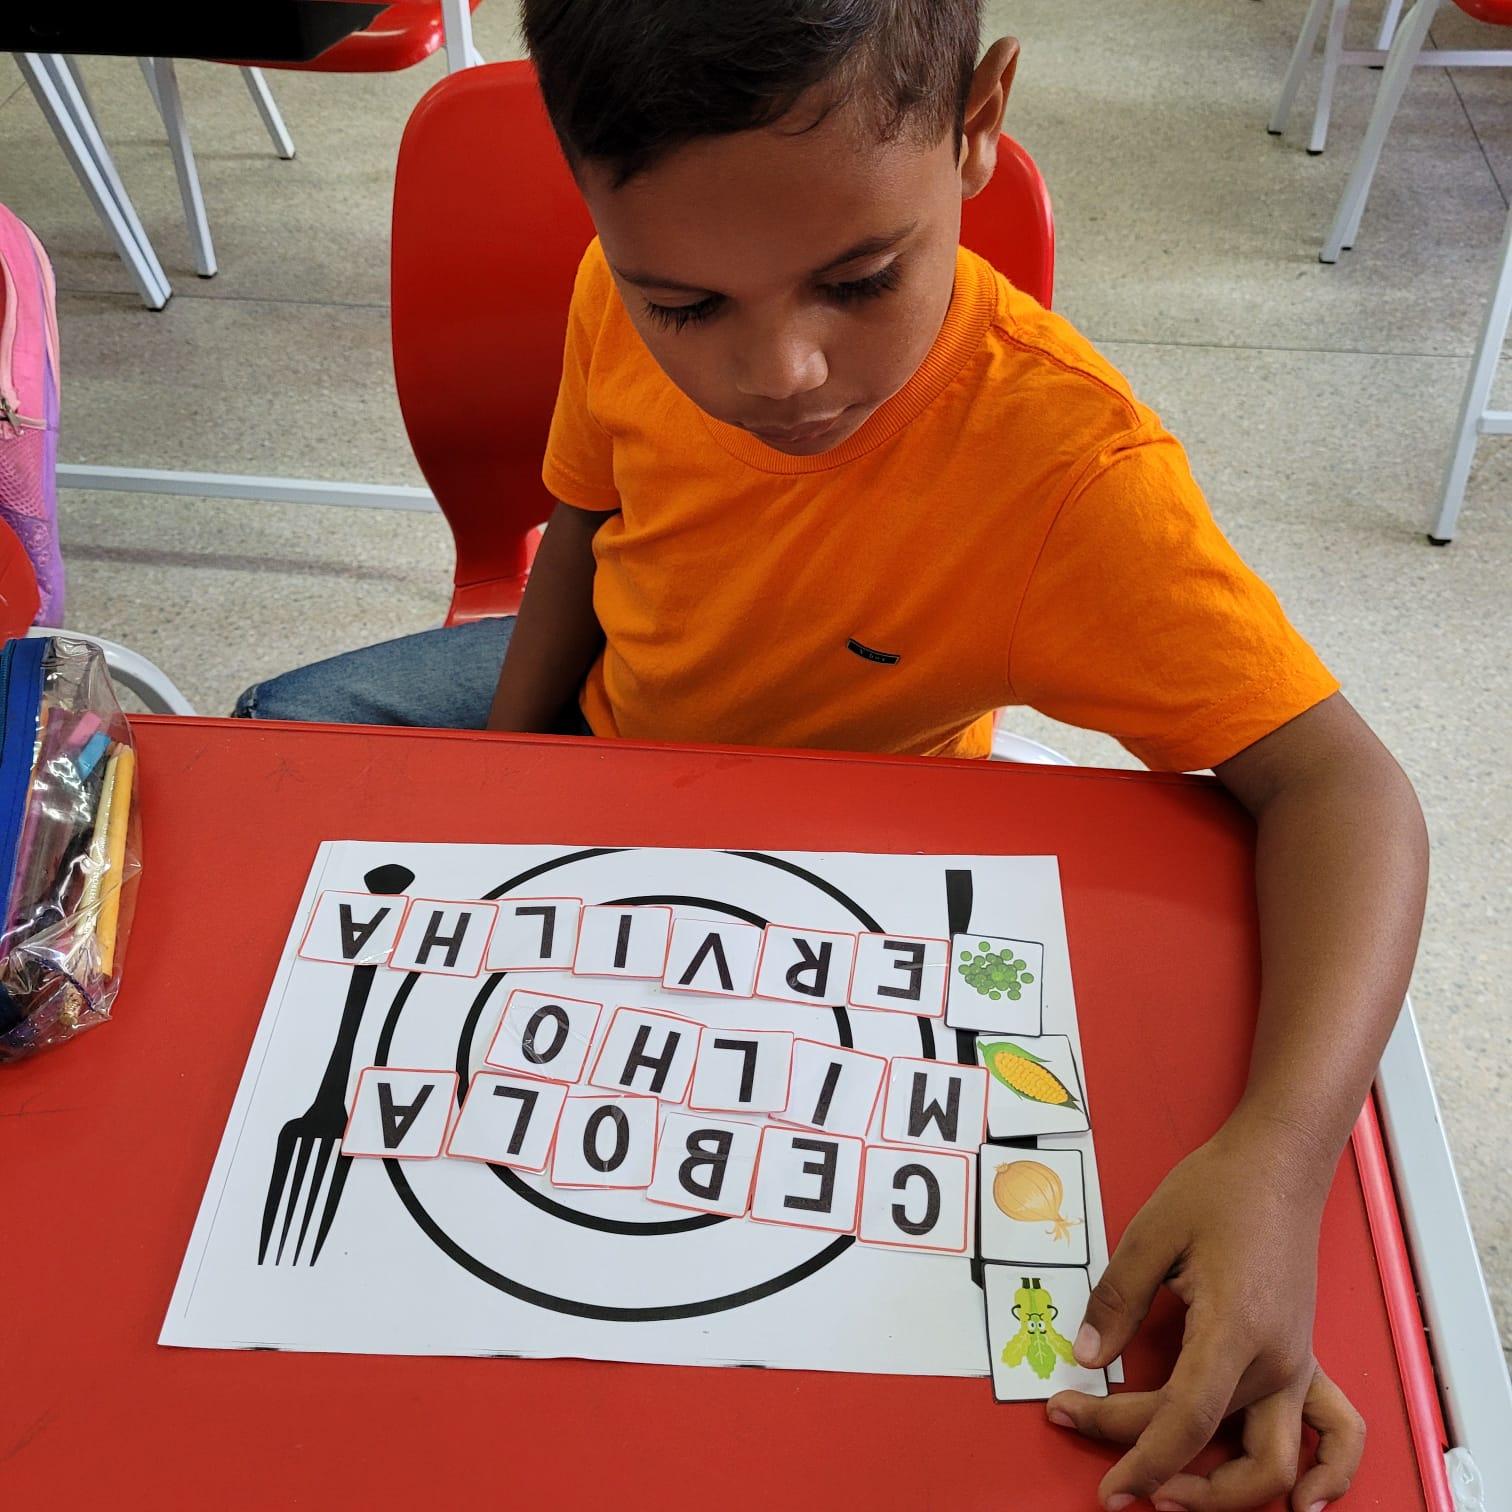 12 Jogos Pedagógicos Português  Atividades de Alfabetização e